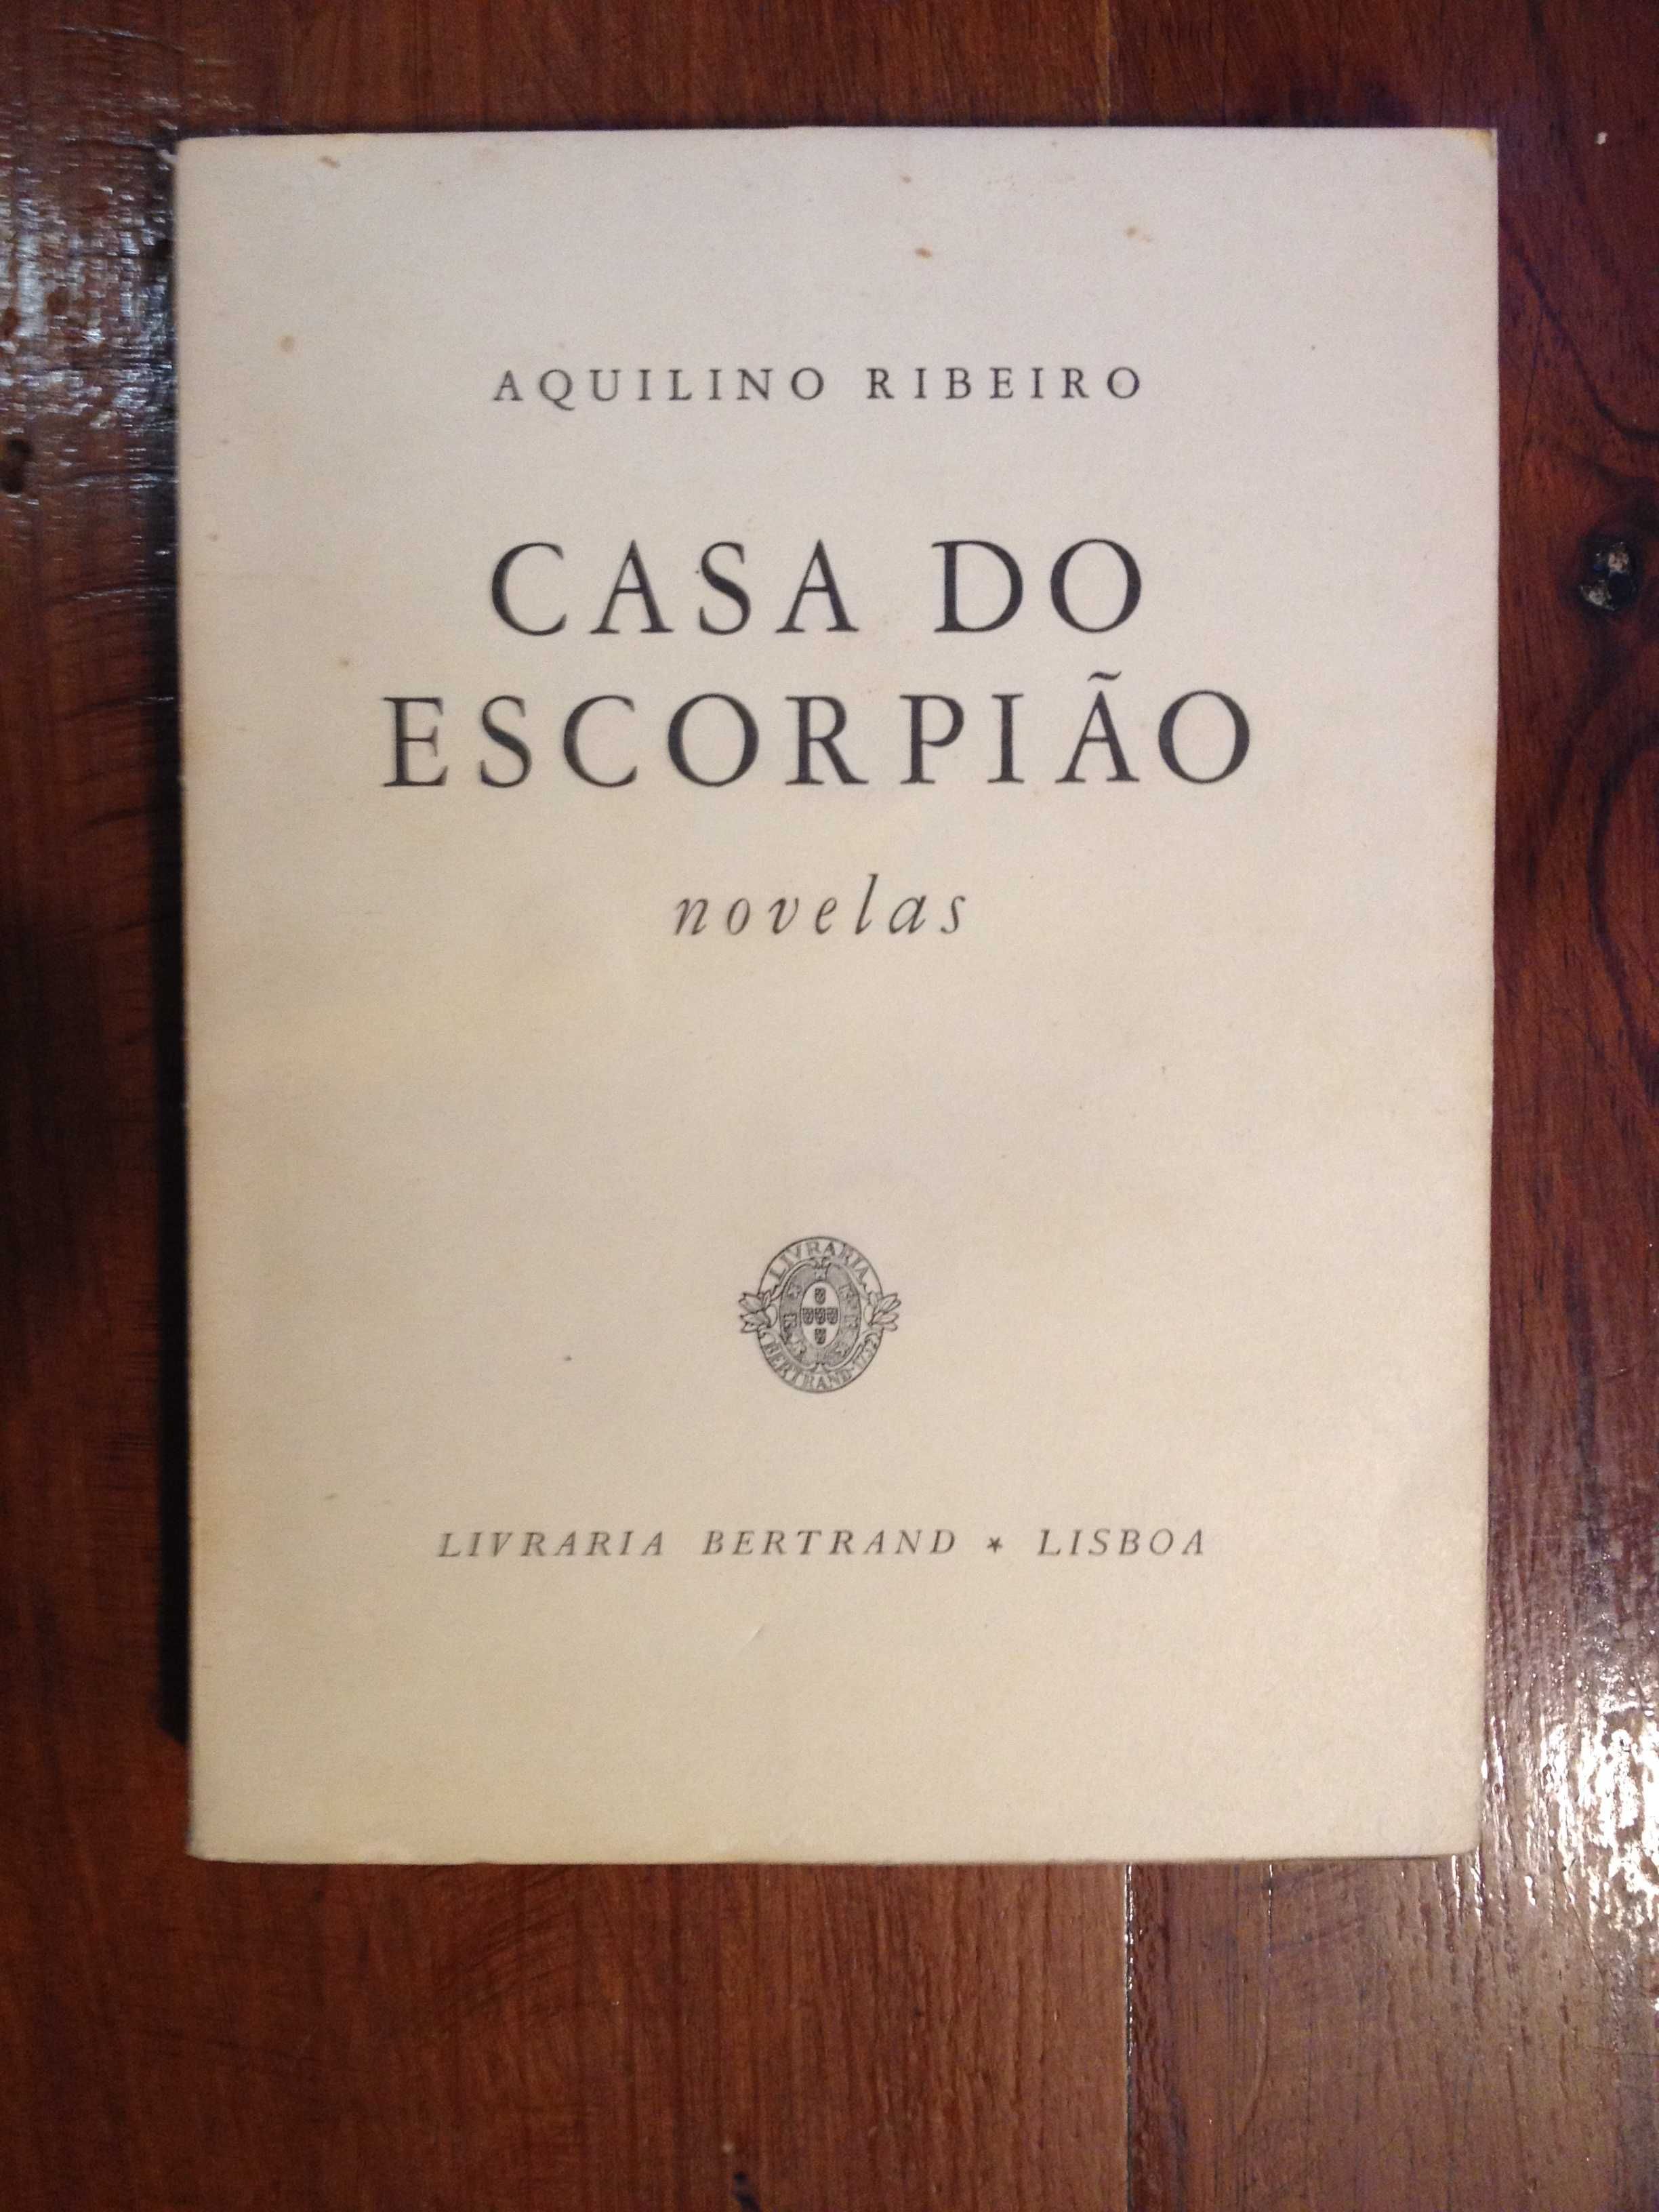 Aquilino Ribeiro - Casa do escorpião [1.ª ed.]